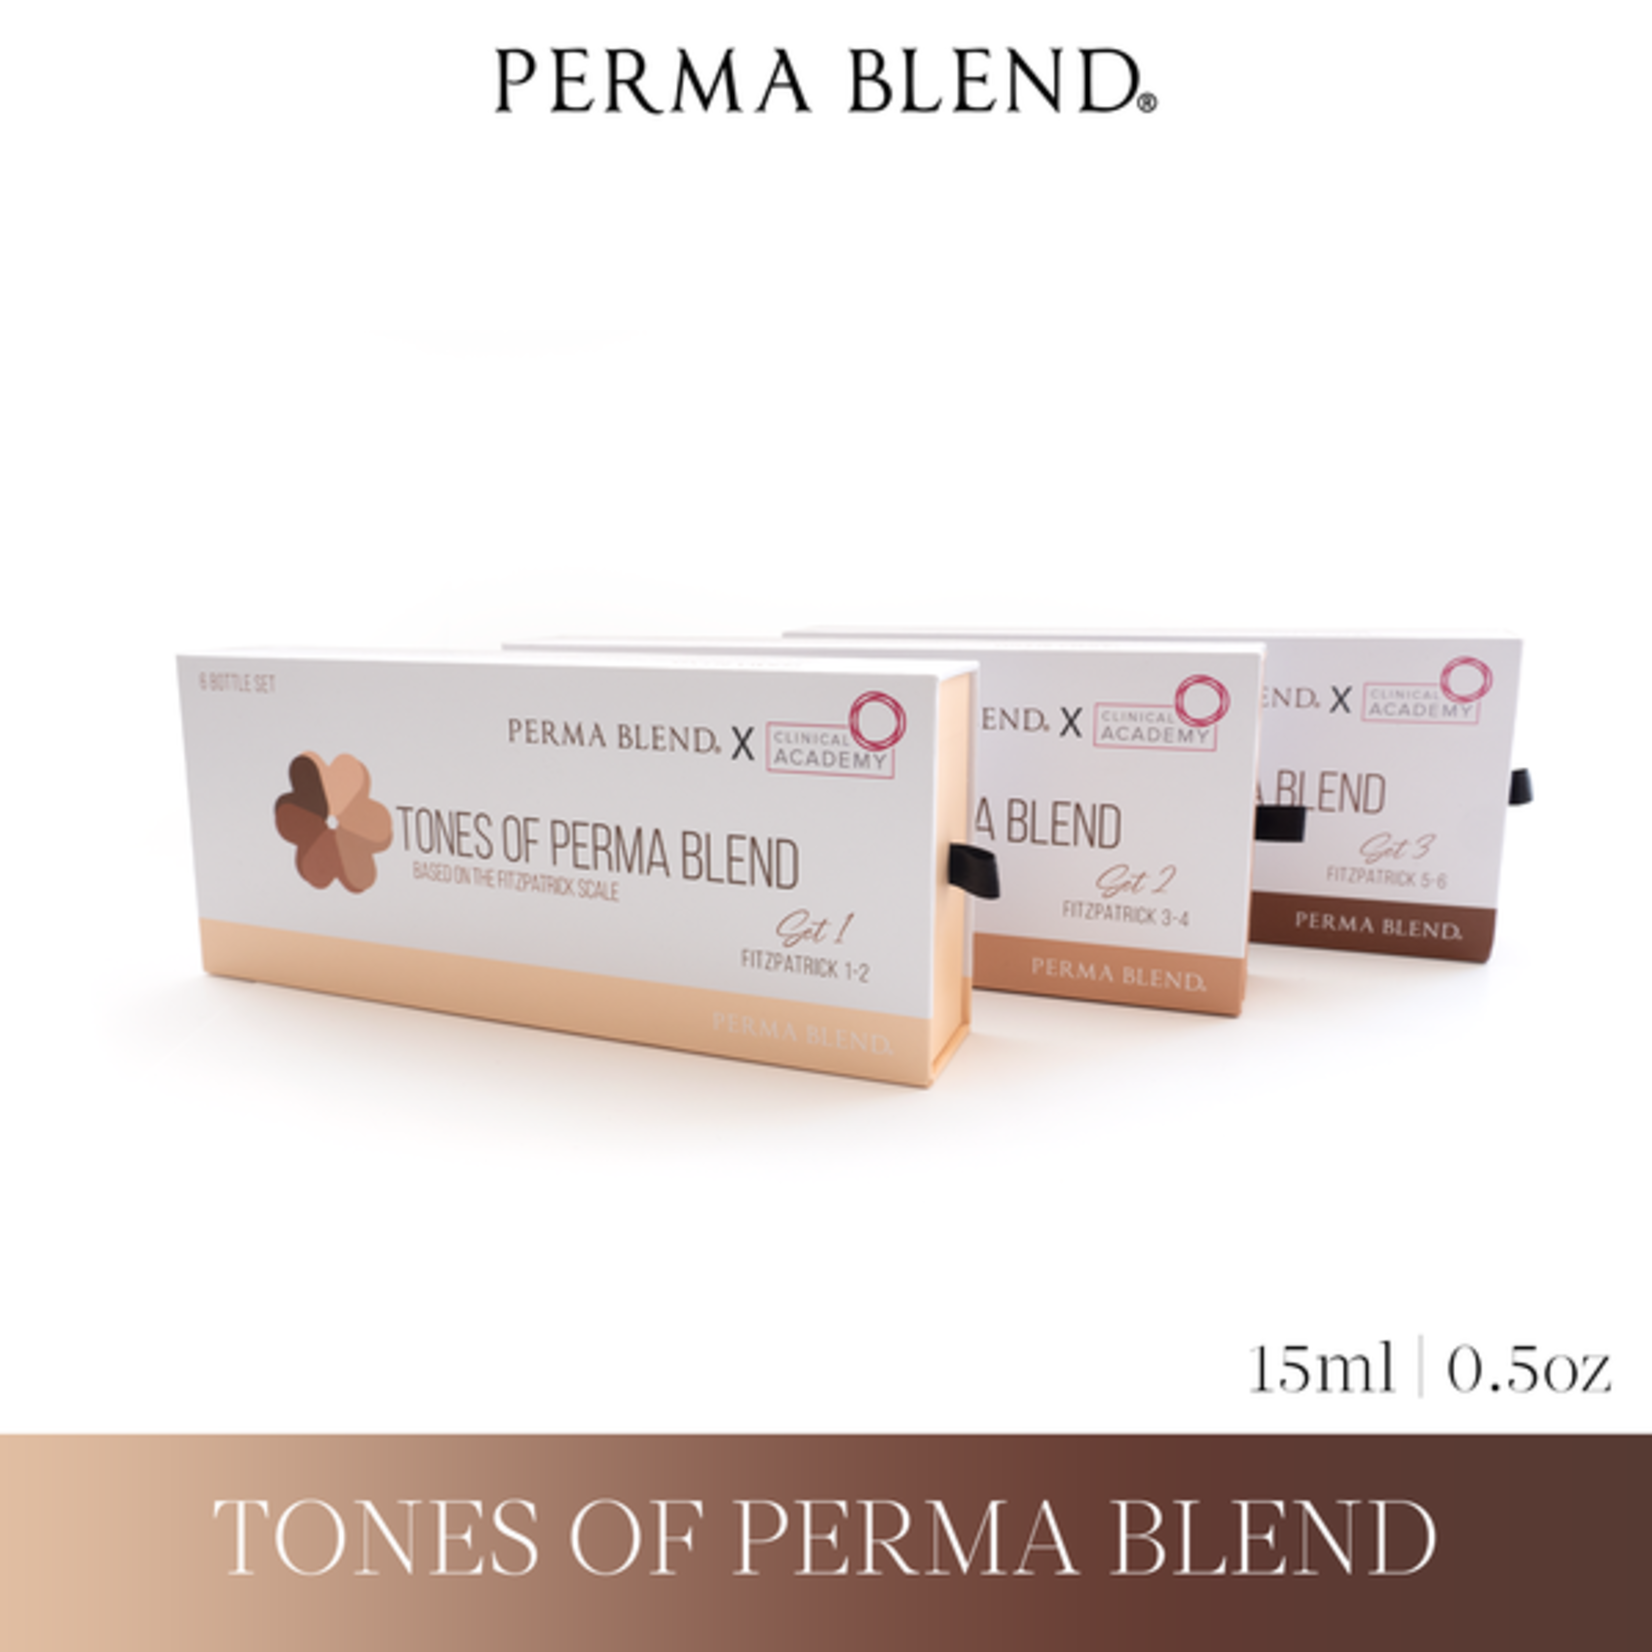 Tones of Perma Blend Set 1 (Fitzpatrick 1-2)